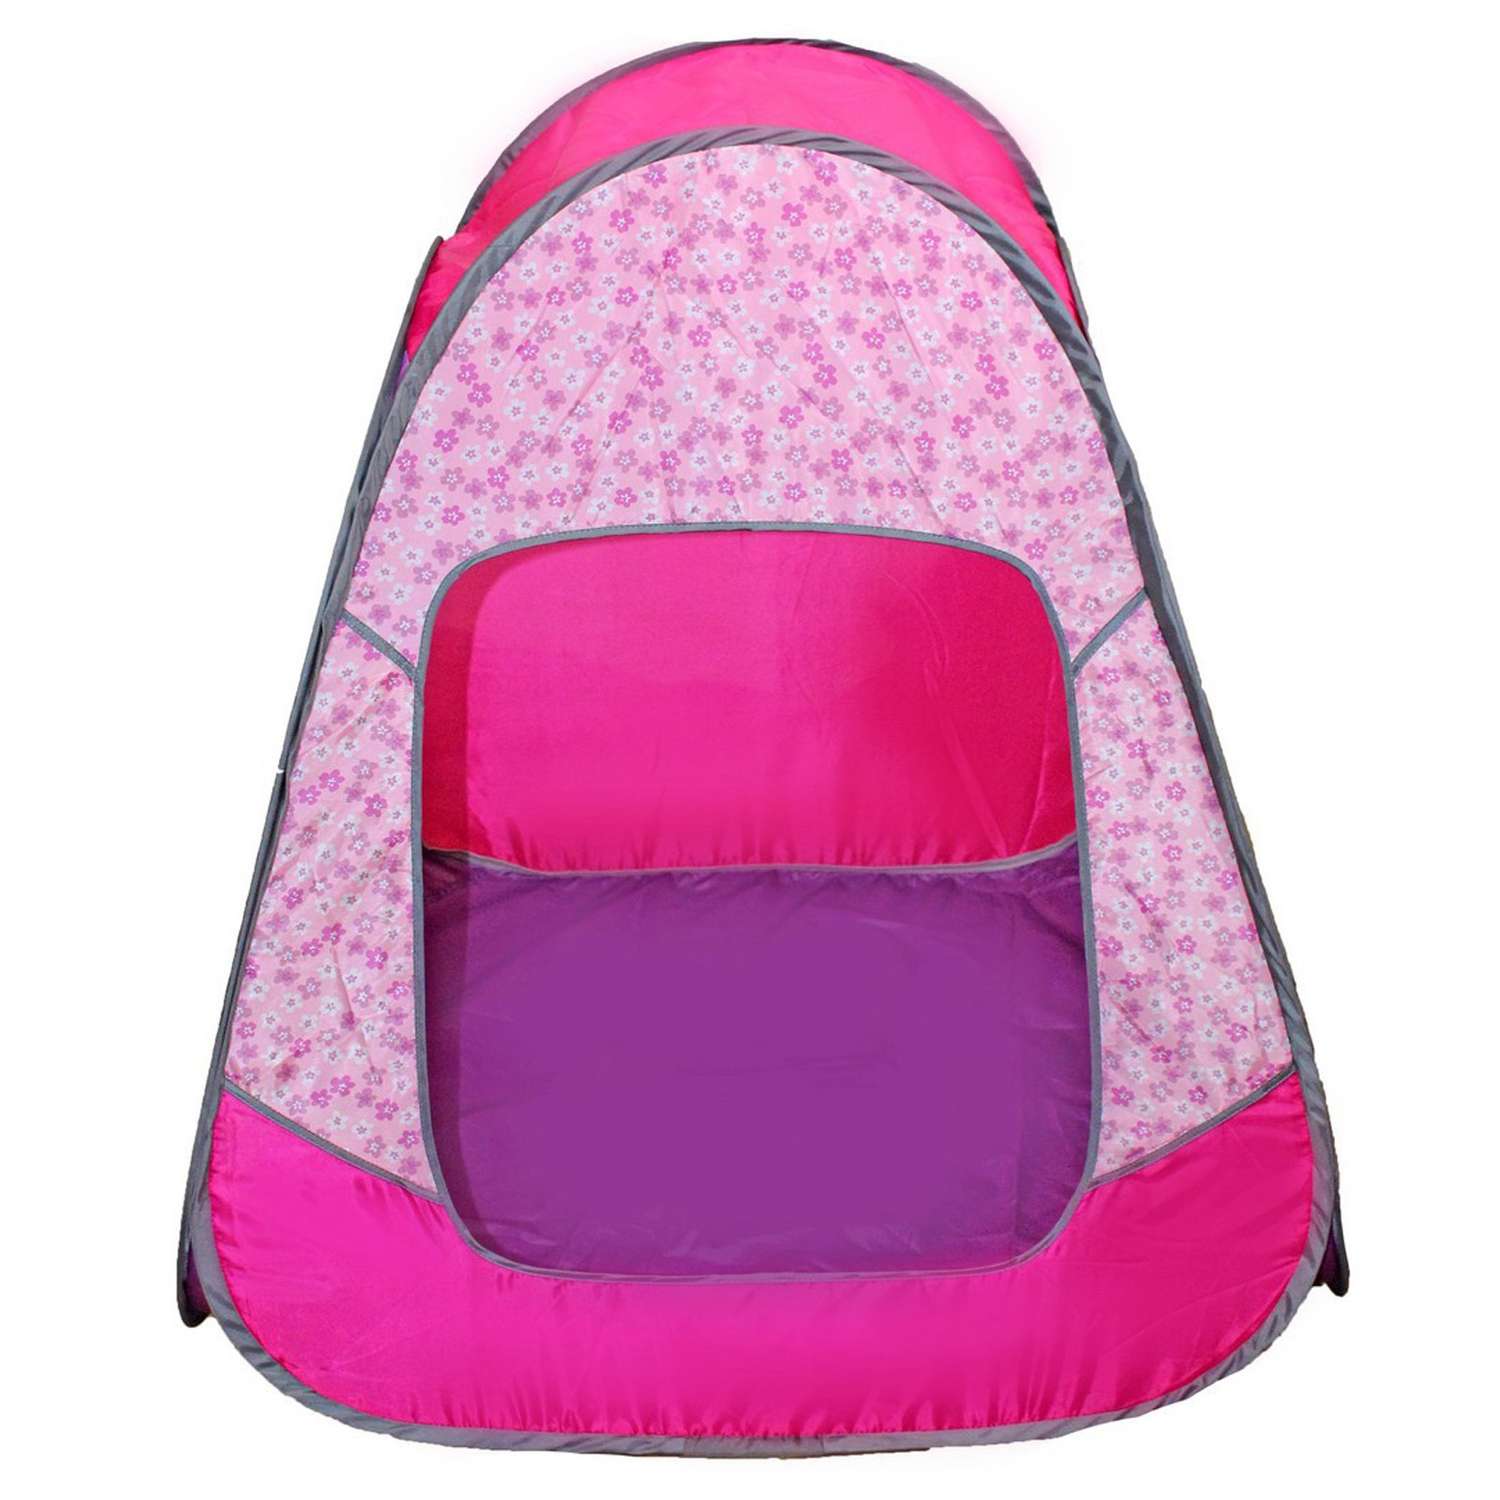 Палатка Zabiaka детская игровая «Радужный домик» 80 × 55 × 40 см принт «Цветы на розовом» - фото 2